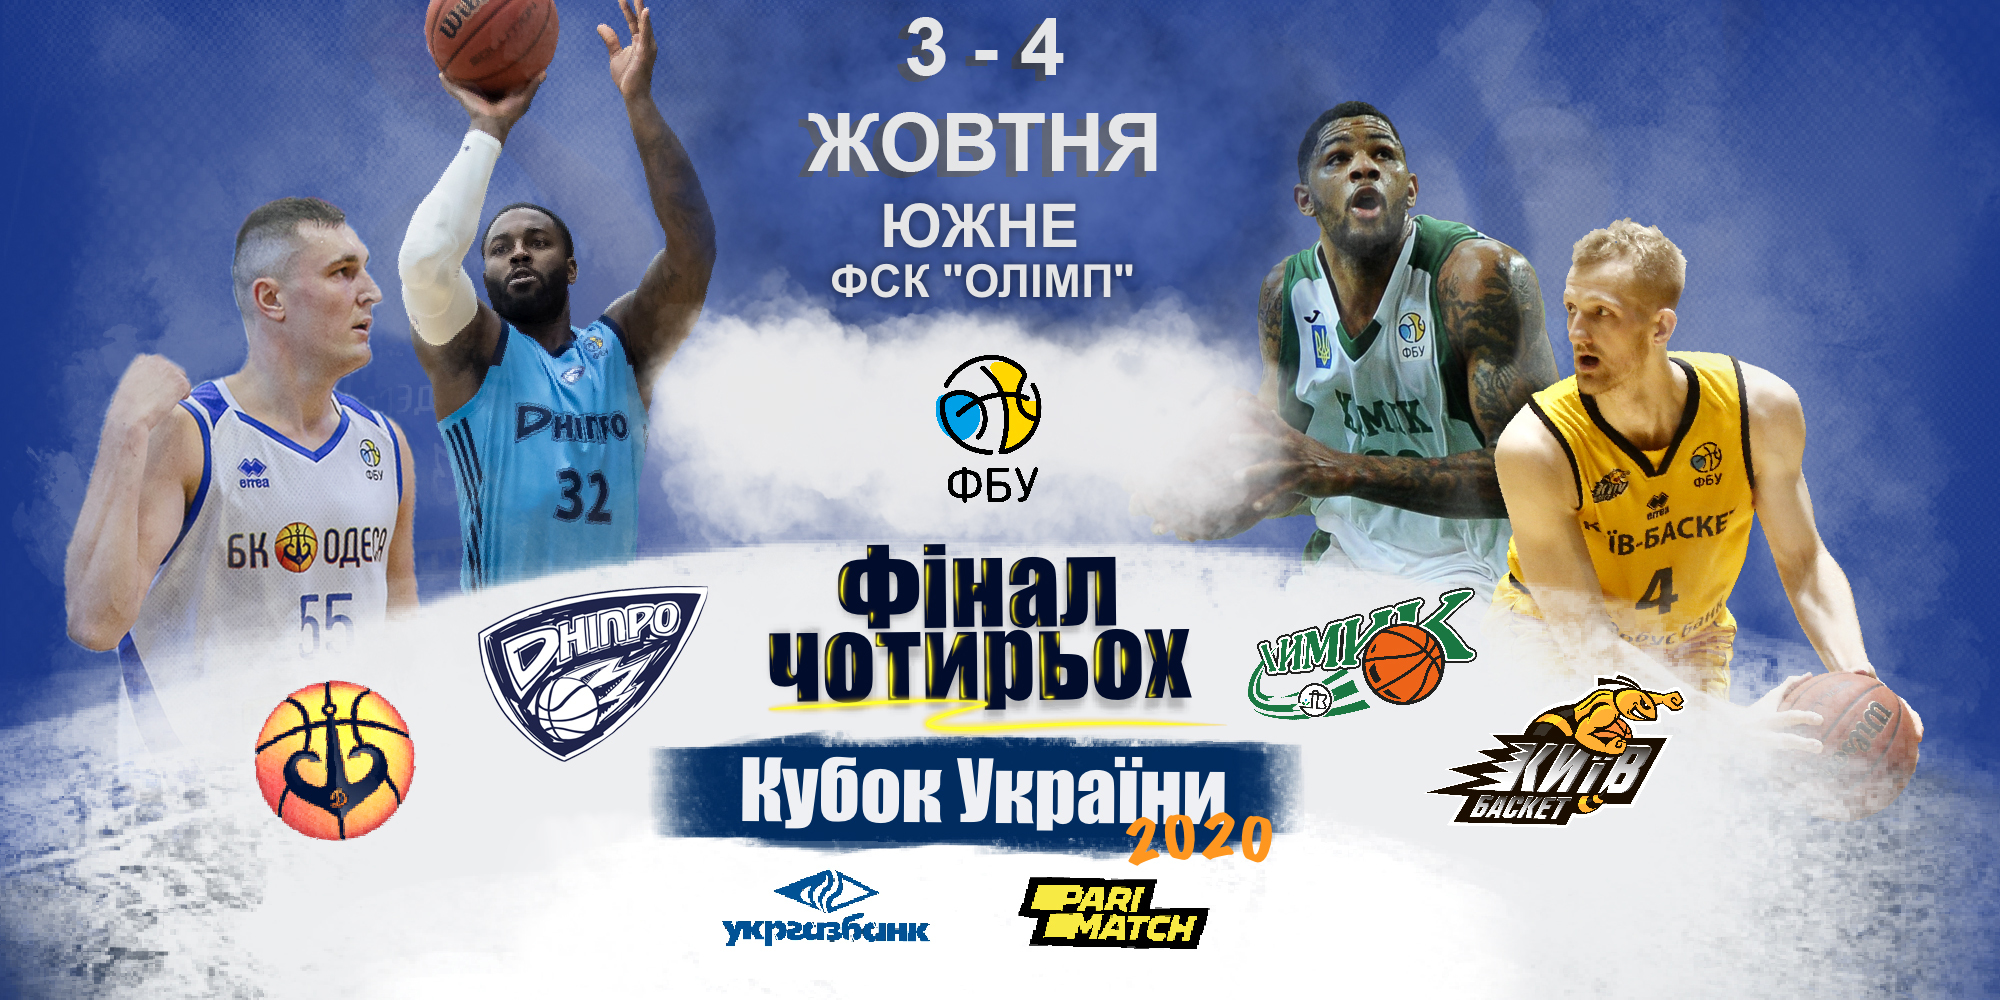 Великий баскетбол повертається: Фінал чотирьох Кубка України пройде в Южному